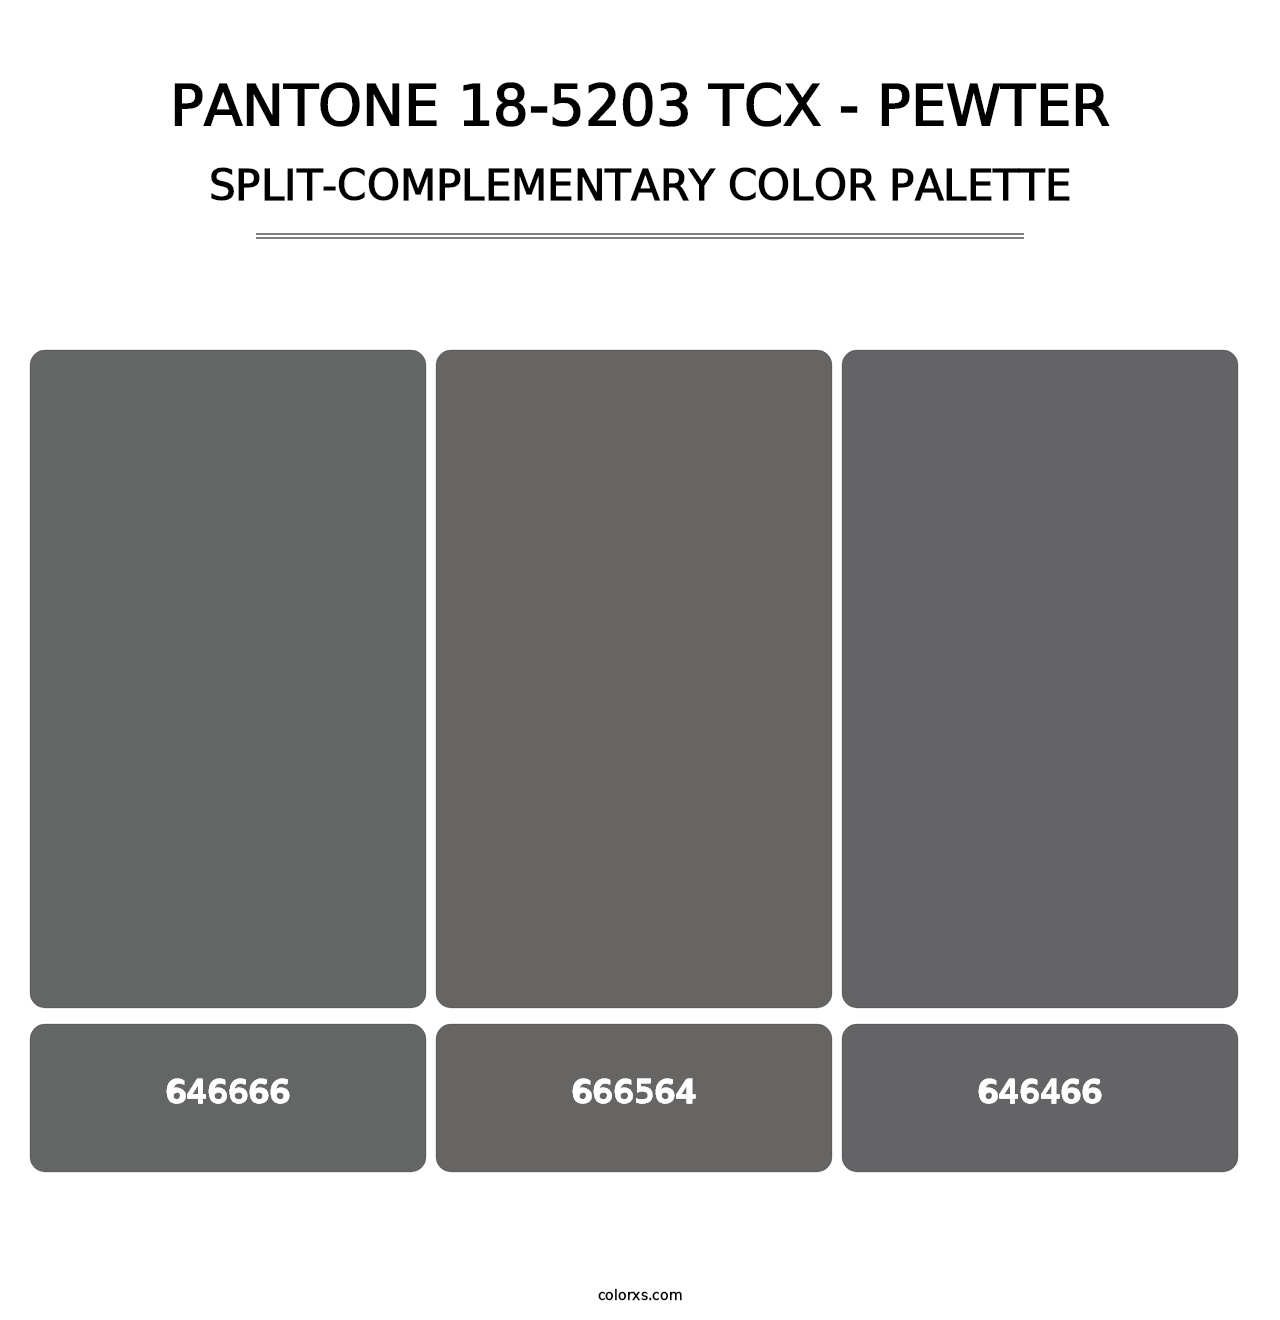 PANTONE 18-5203 TCX - Pewter - Split-Complementary Color Palette